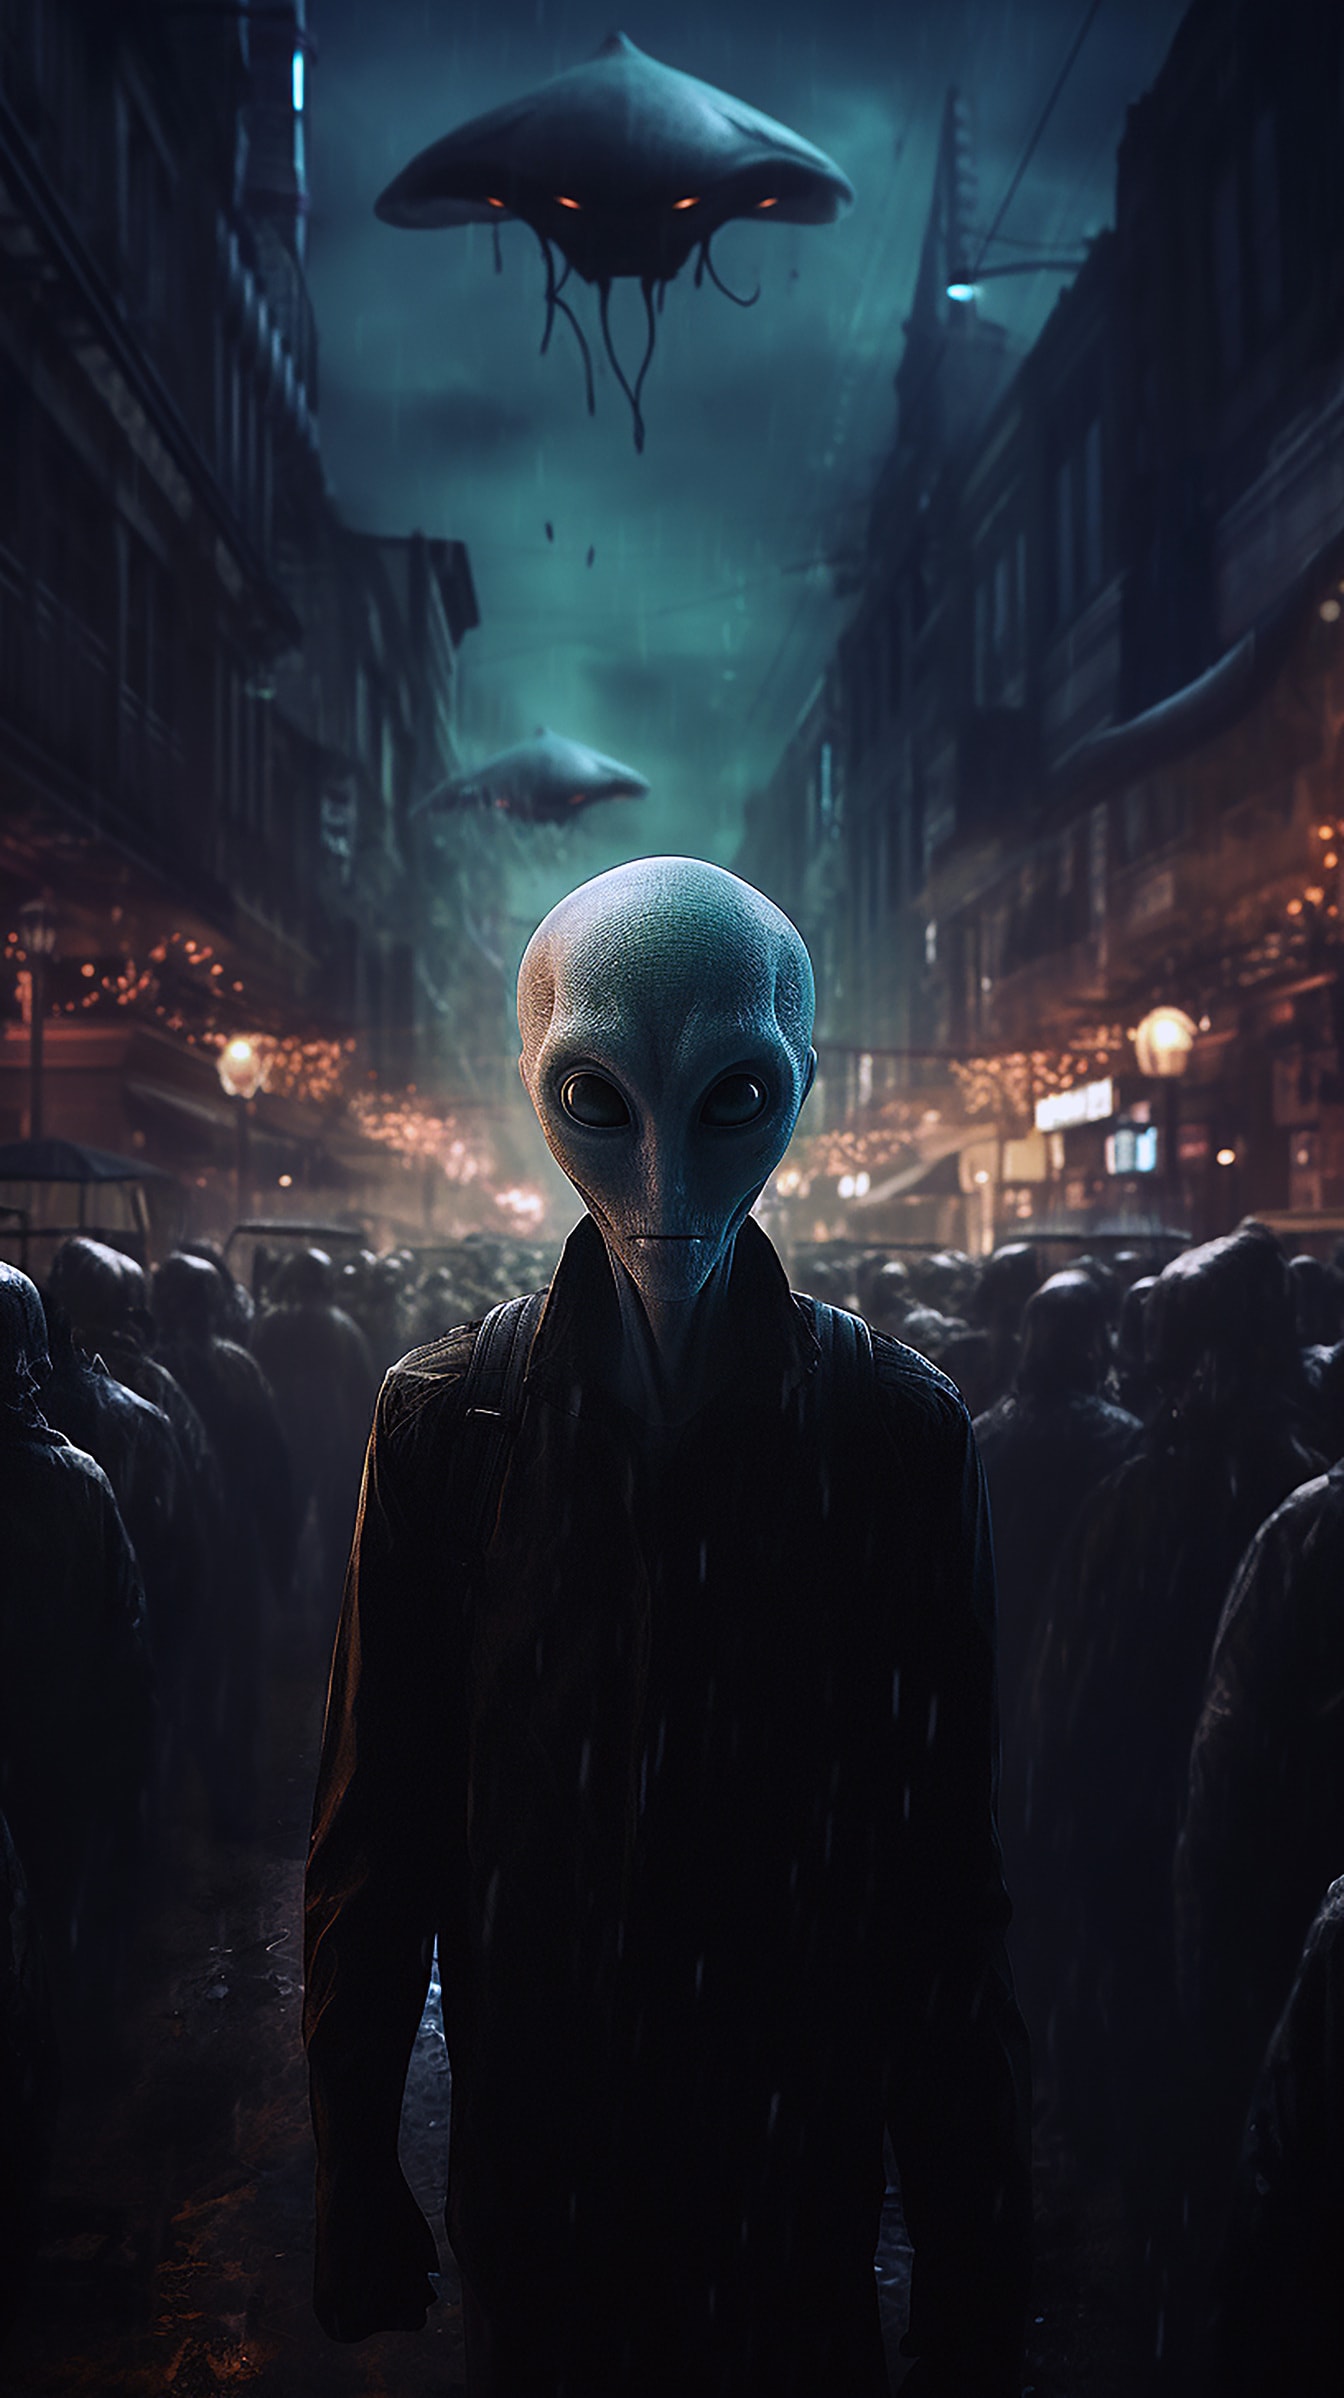 Humanoidní mimozemšťan na ulici v noci fantasy horor ilustrace